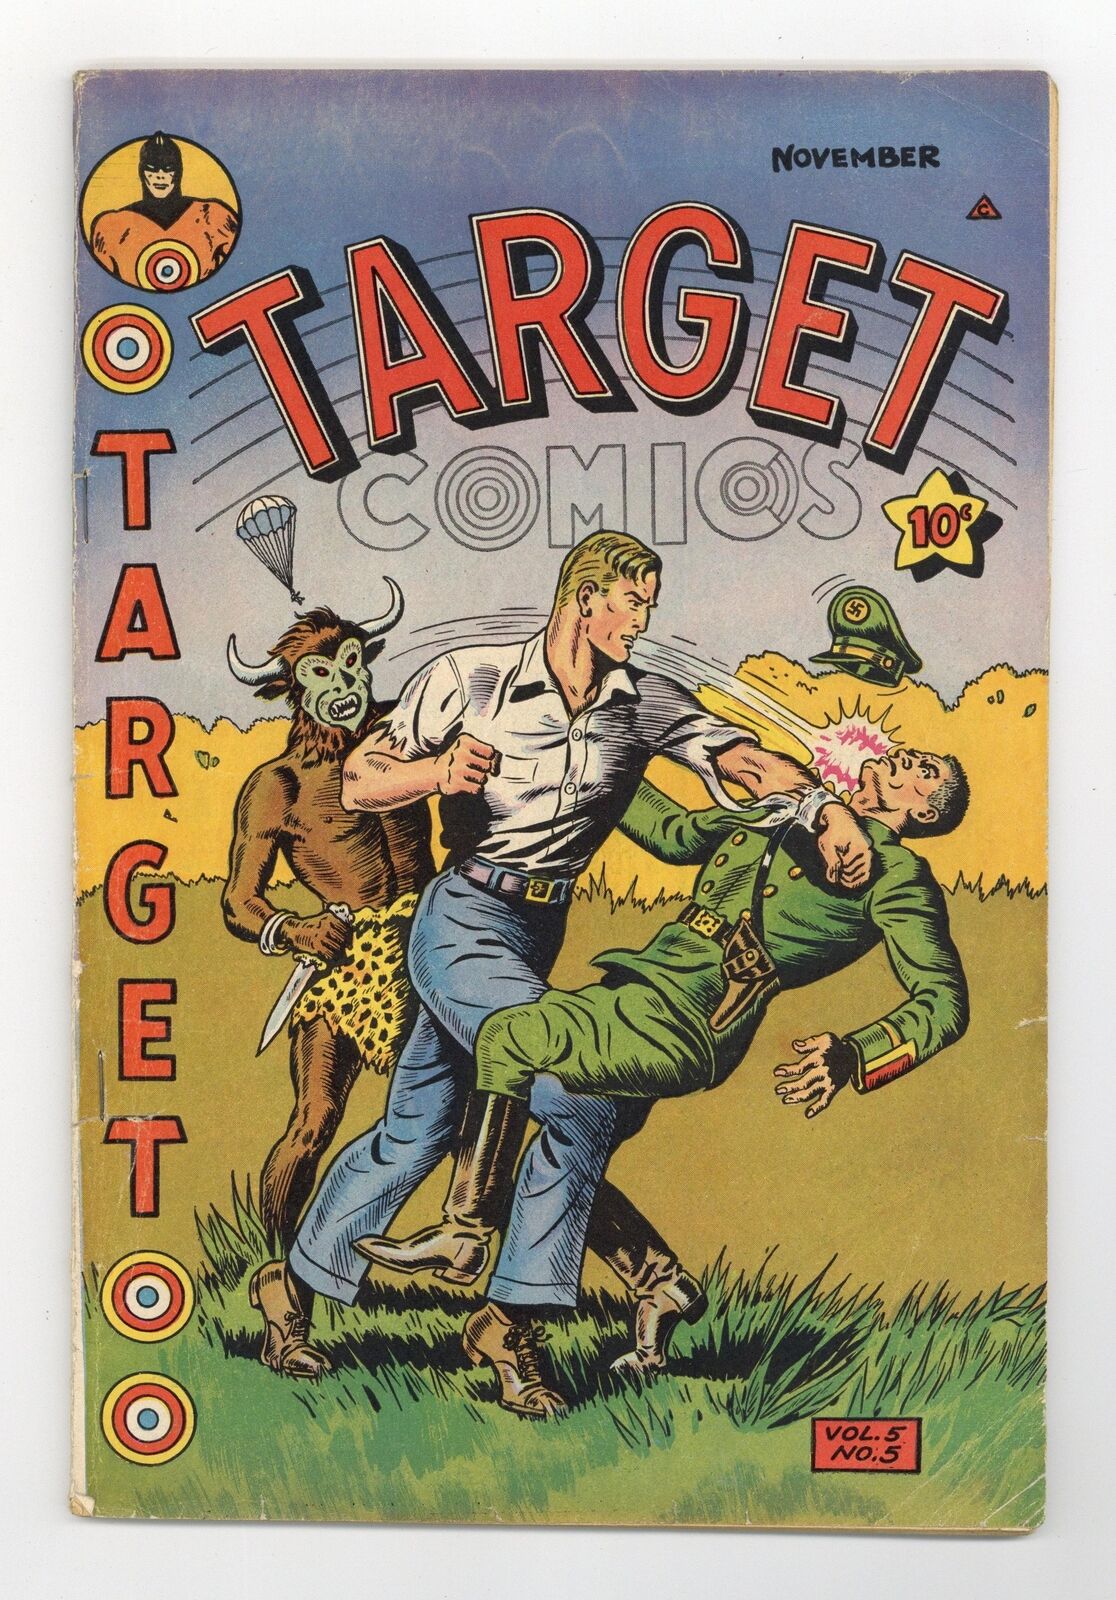 Target Comics Vol. 5 #5 VG 4.0 1944